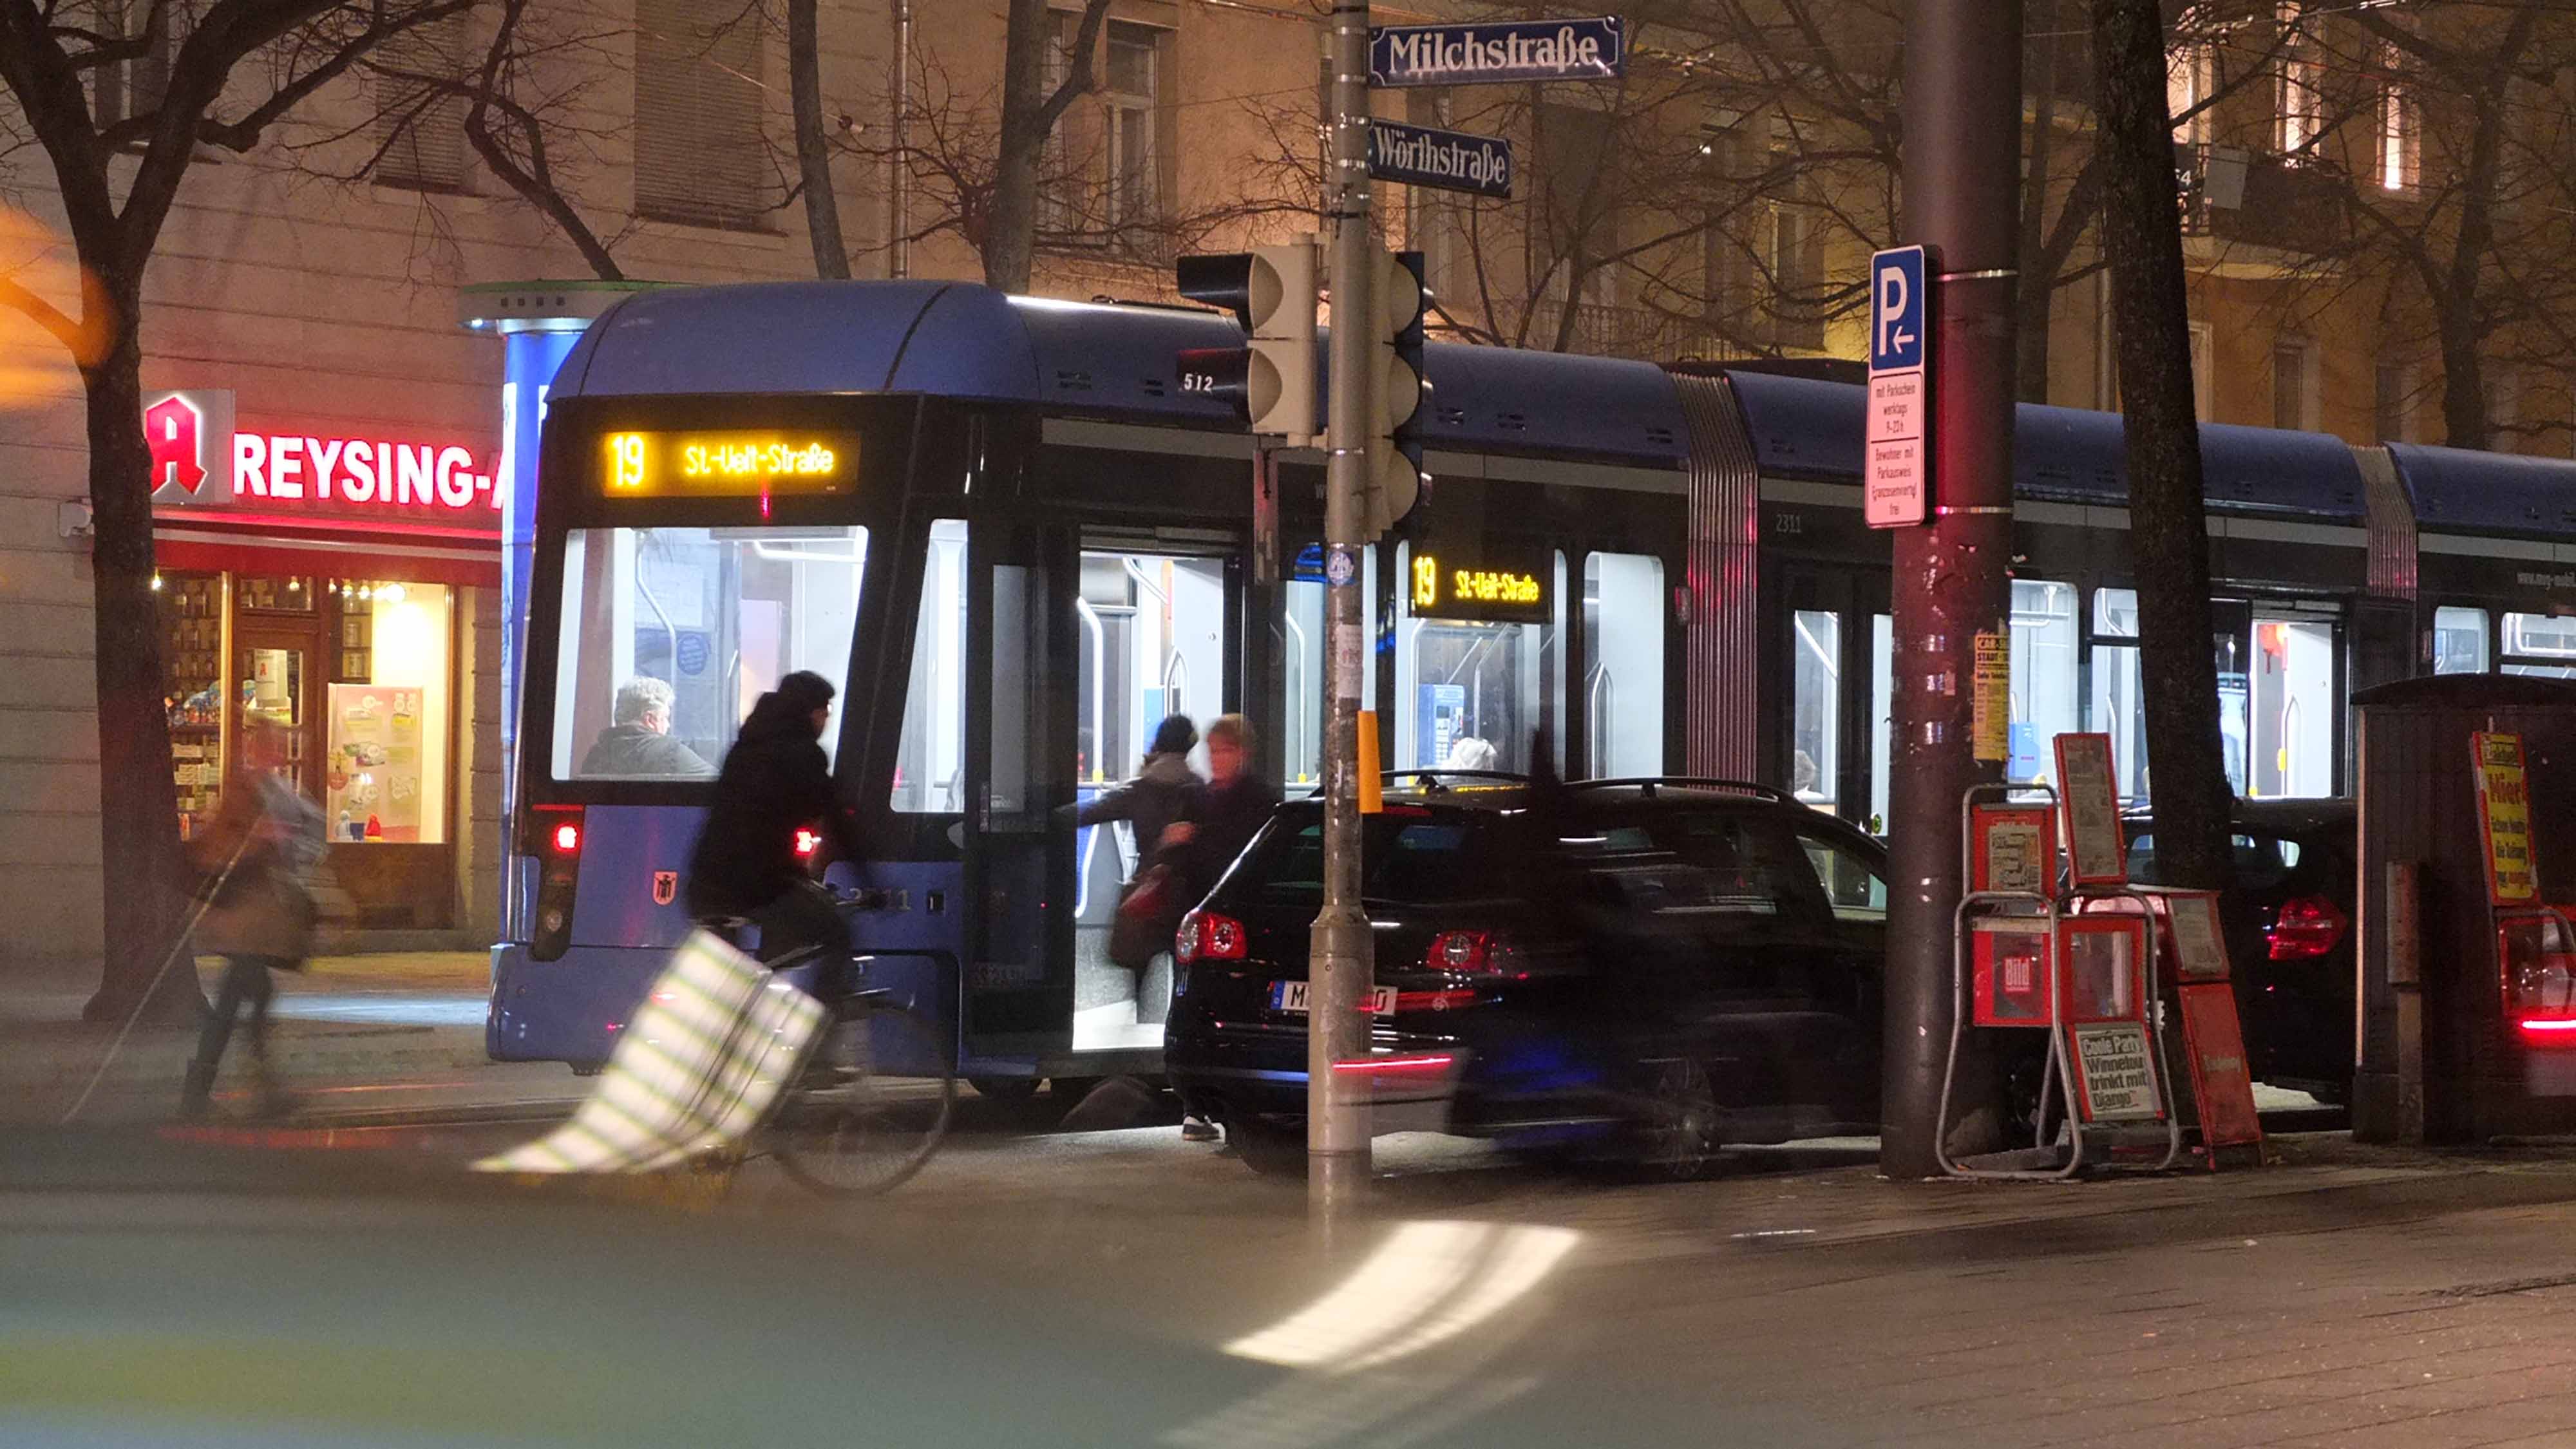 Das Neonlicht der Straßenbahn ist kälter und grünlicher als die wärmere Ladenbeleuchtung